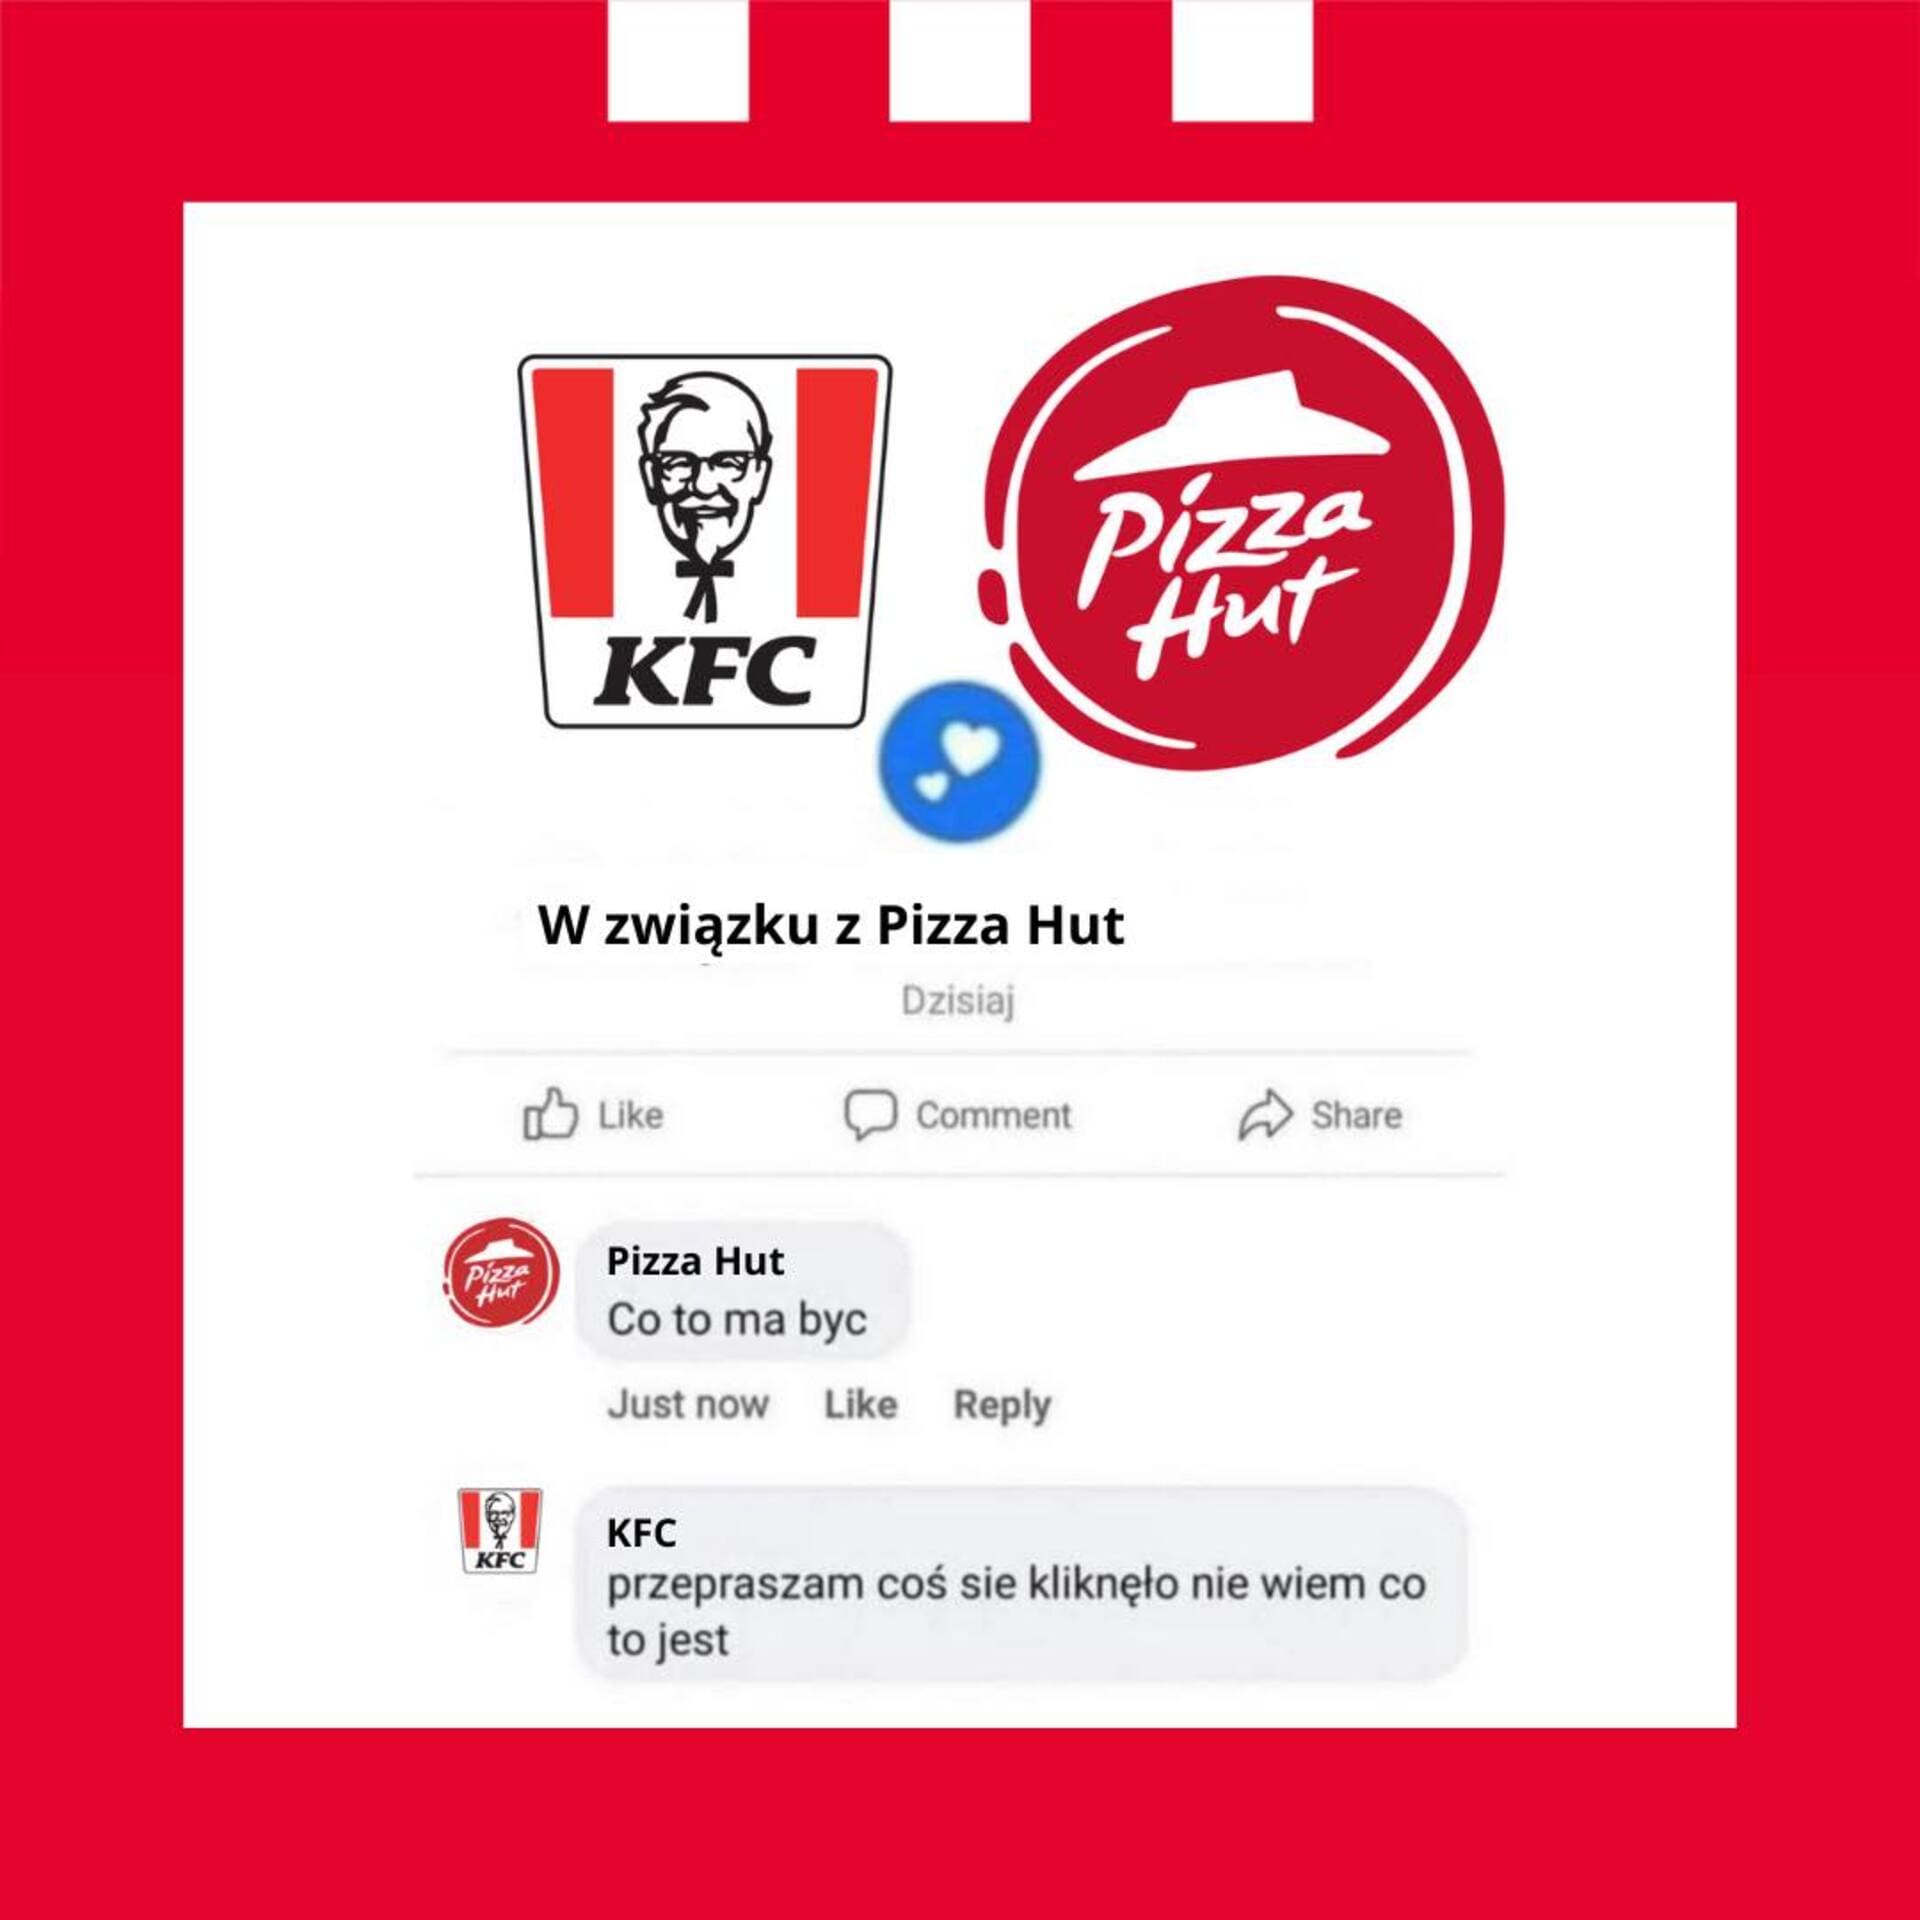 Przykład mema marketingowego sieci KFC